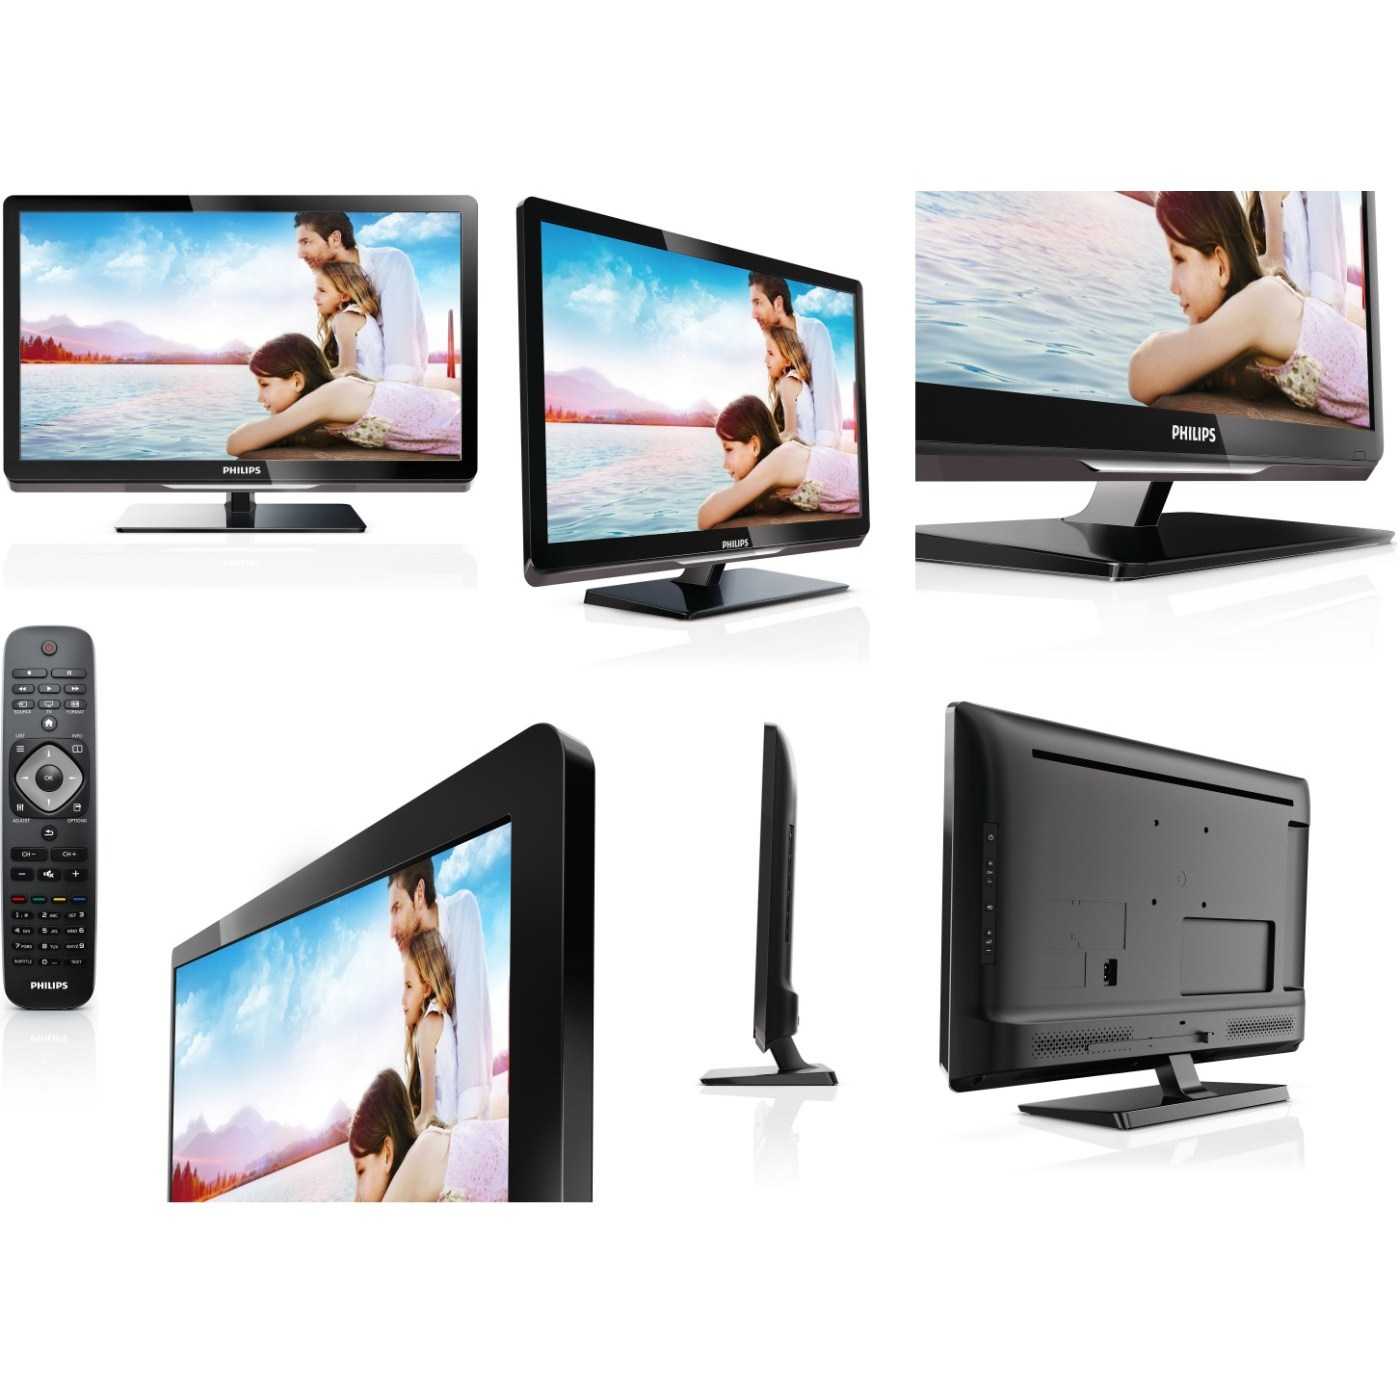 Philips 22pfl2908h - купить , скидки, цена, отзывы, обзор, характеристики - телевизоры